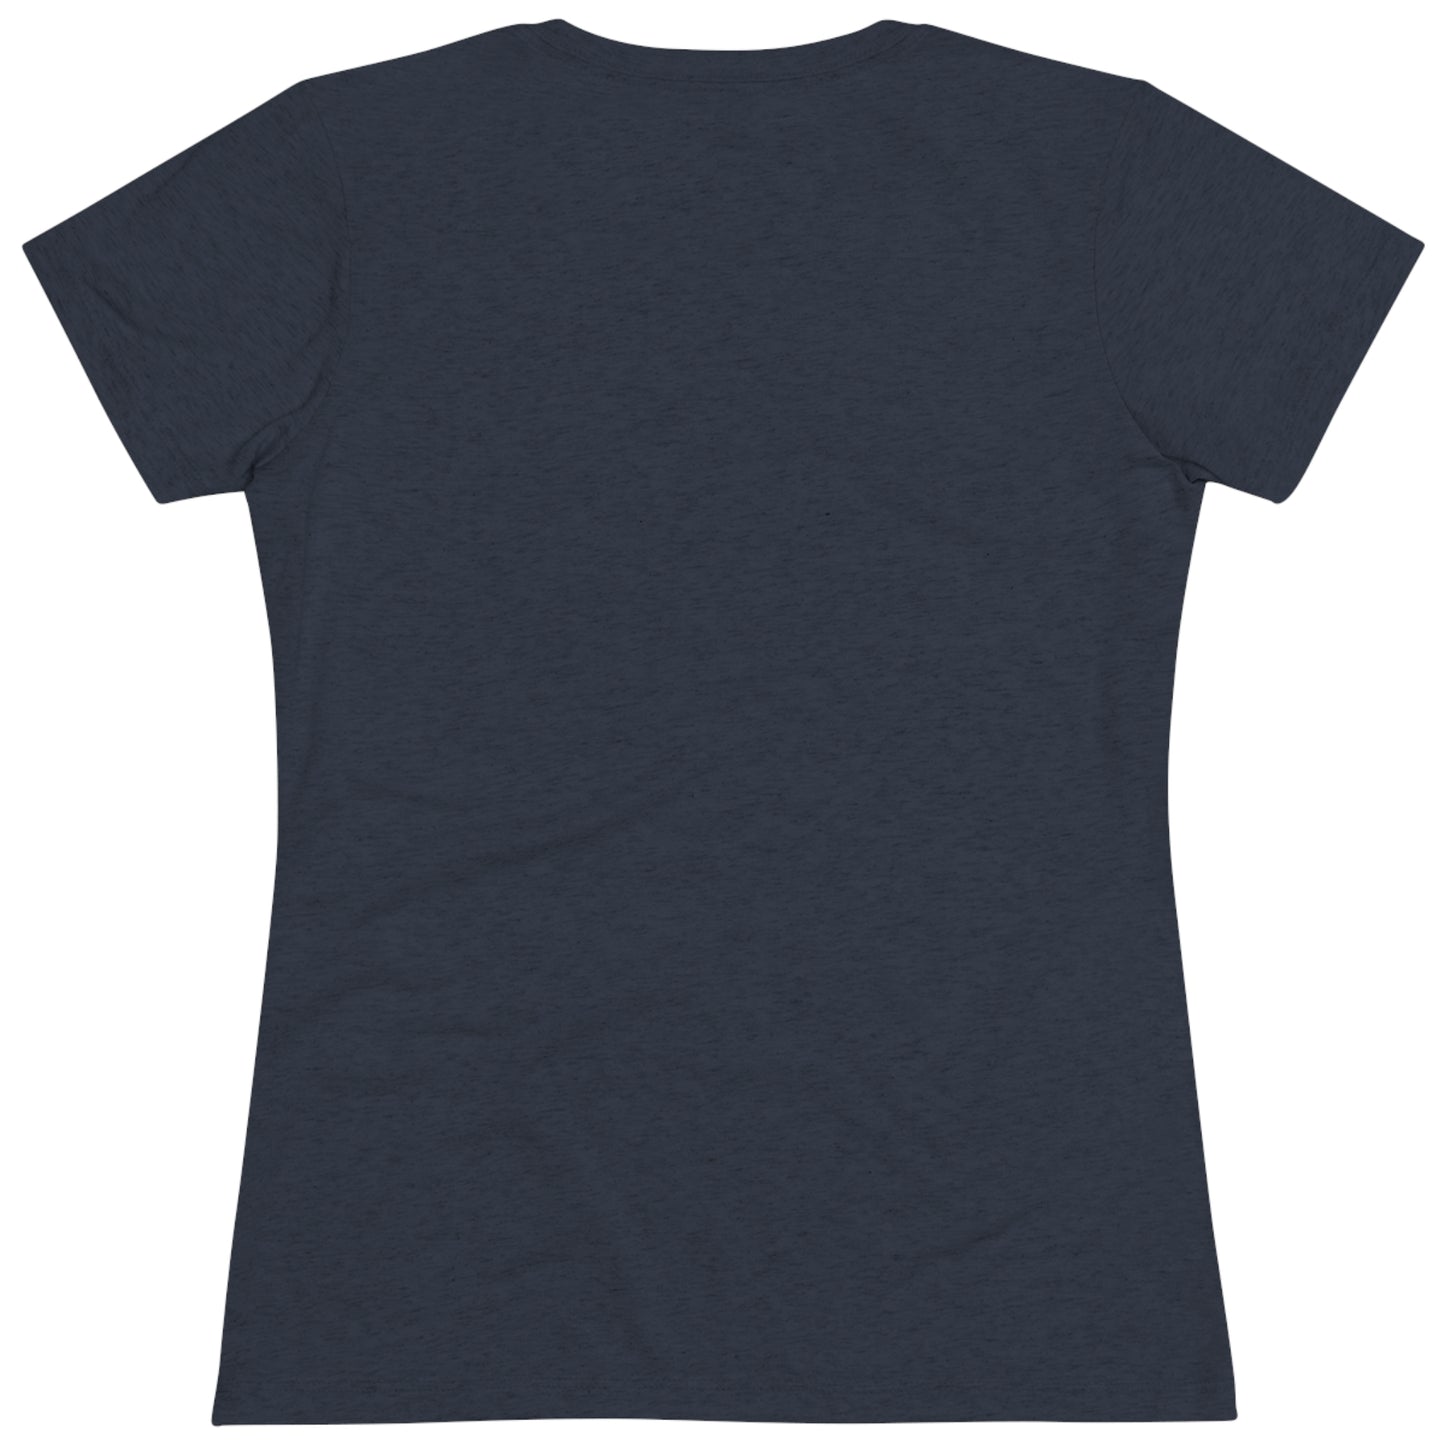 Women's "Retro Utah" T-Shirt - Utah.com